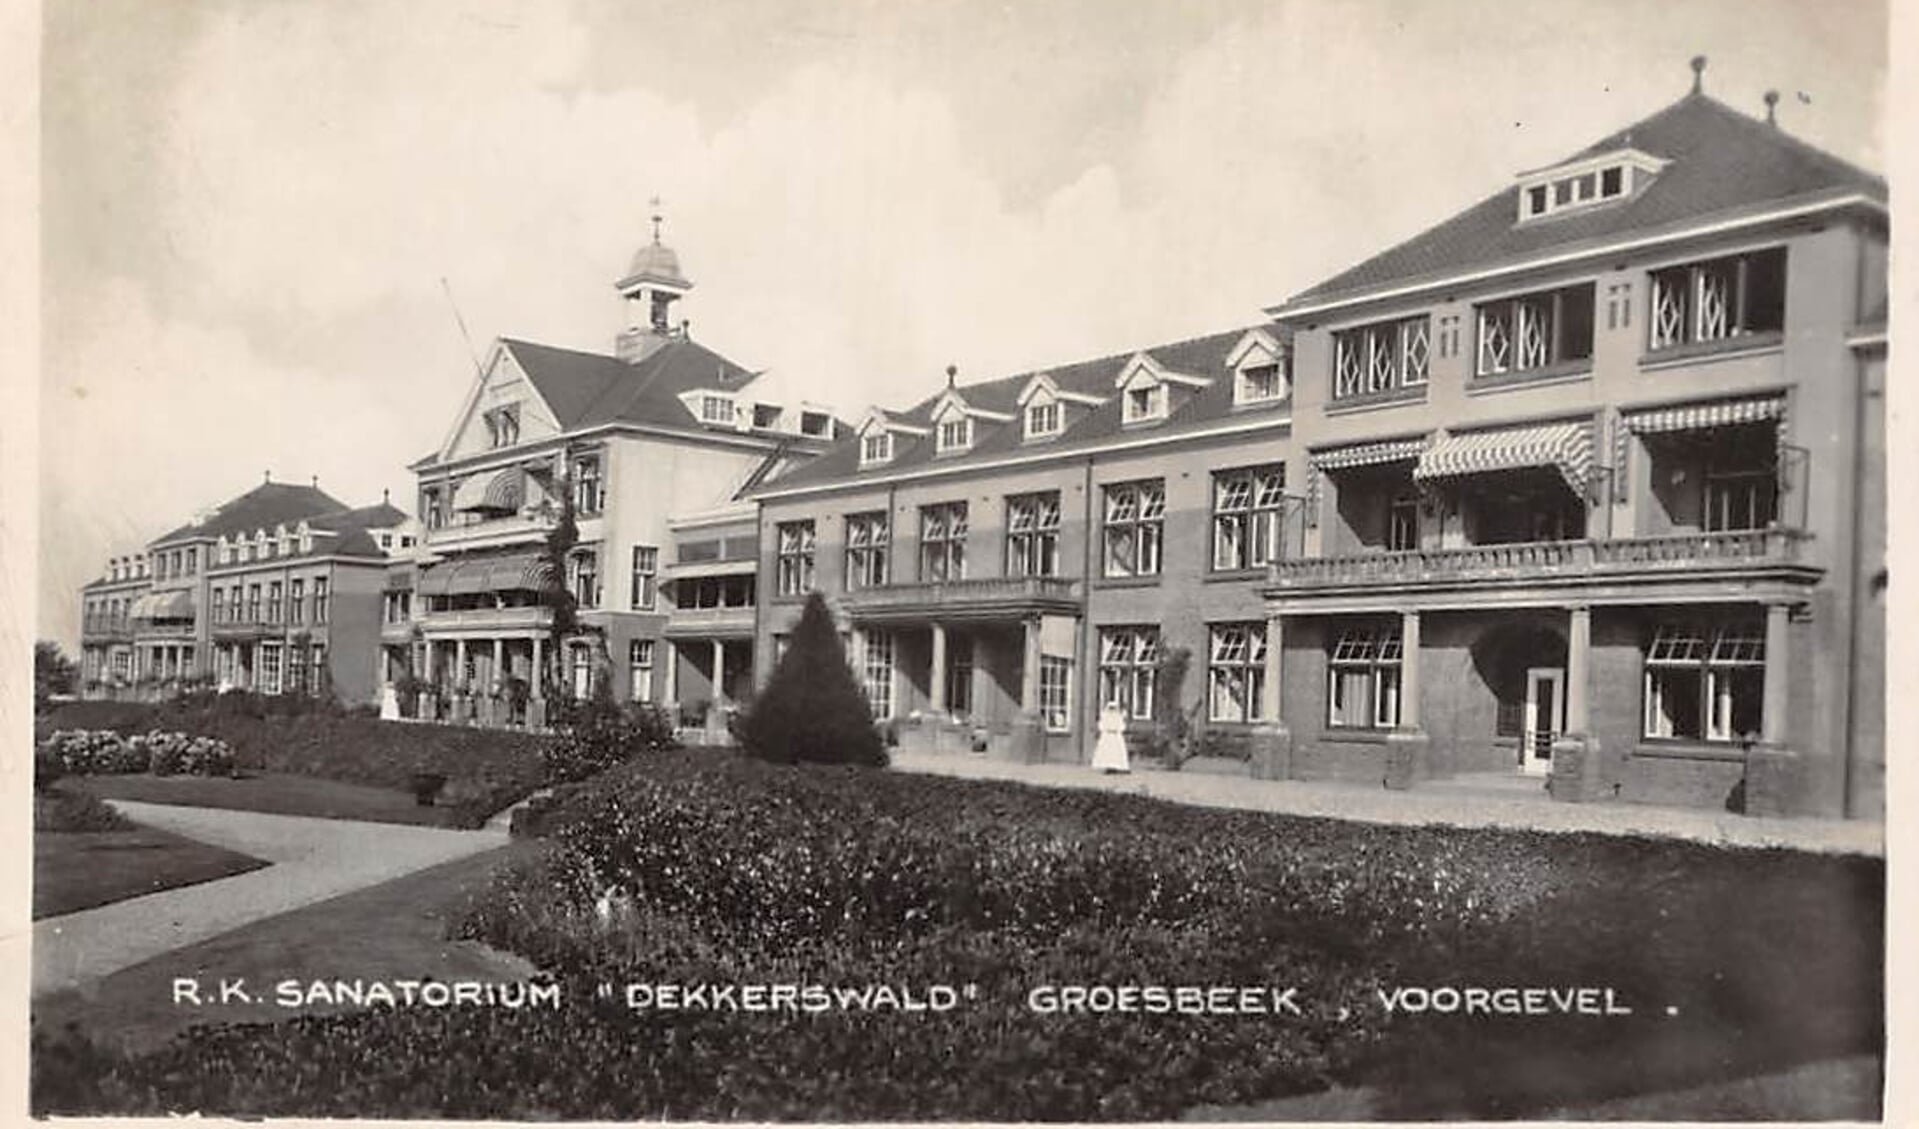 Longzorg in een golvend landschap: over natuur, geloof en wetenschap. Sanatorium Dekkerswald 1913-2022